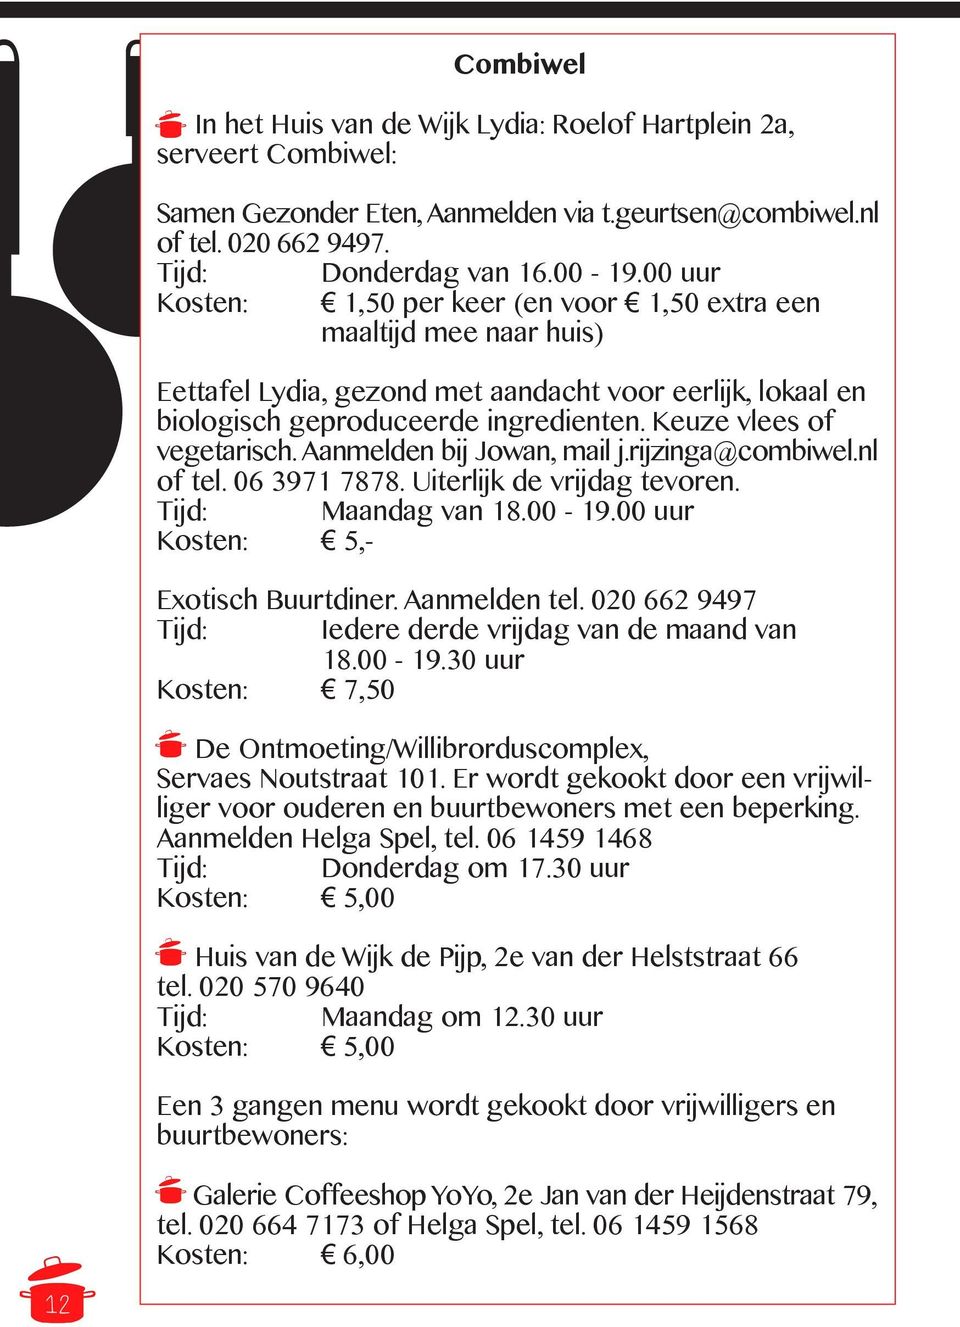 Keuze vlees of vegetarisch. Aanmelden bij Jowan, mail j.rijzinga@combiwel.nl of tel. 06 3971 7878. Uiterlijk de vrijdag tevoren. Tijd: Maandag van 18.00-19.00 uur Kosten: 5,- Exotisch Buurtdiner.